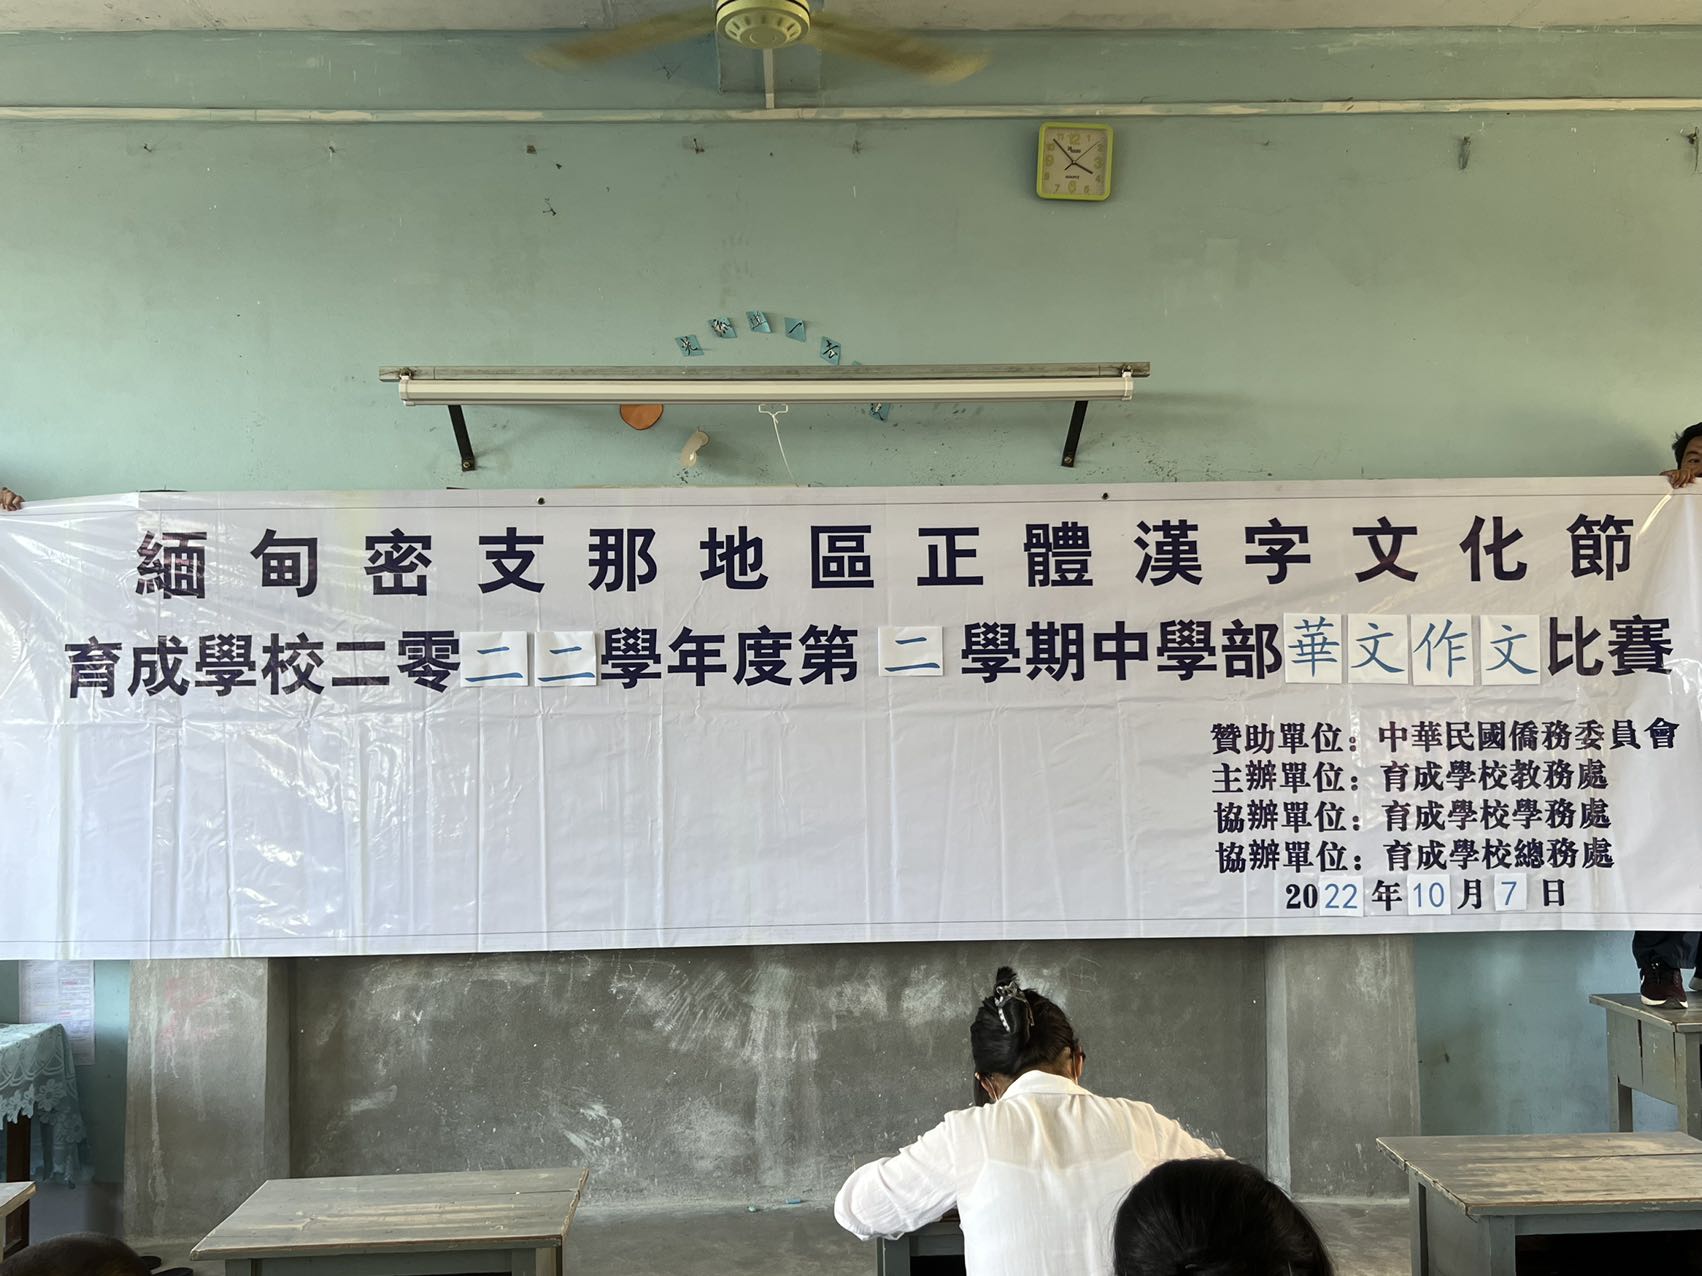 緬甸密支那育成學校舉辦「正體漢字文化節」華文作文比賽